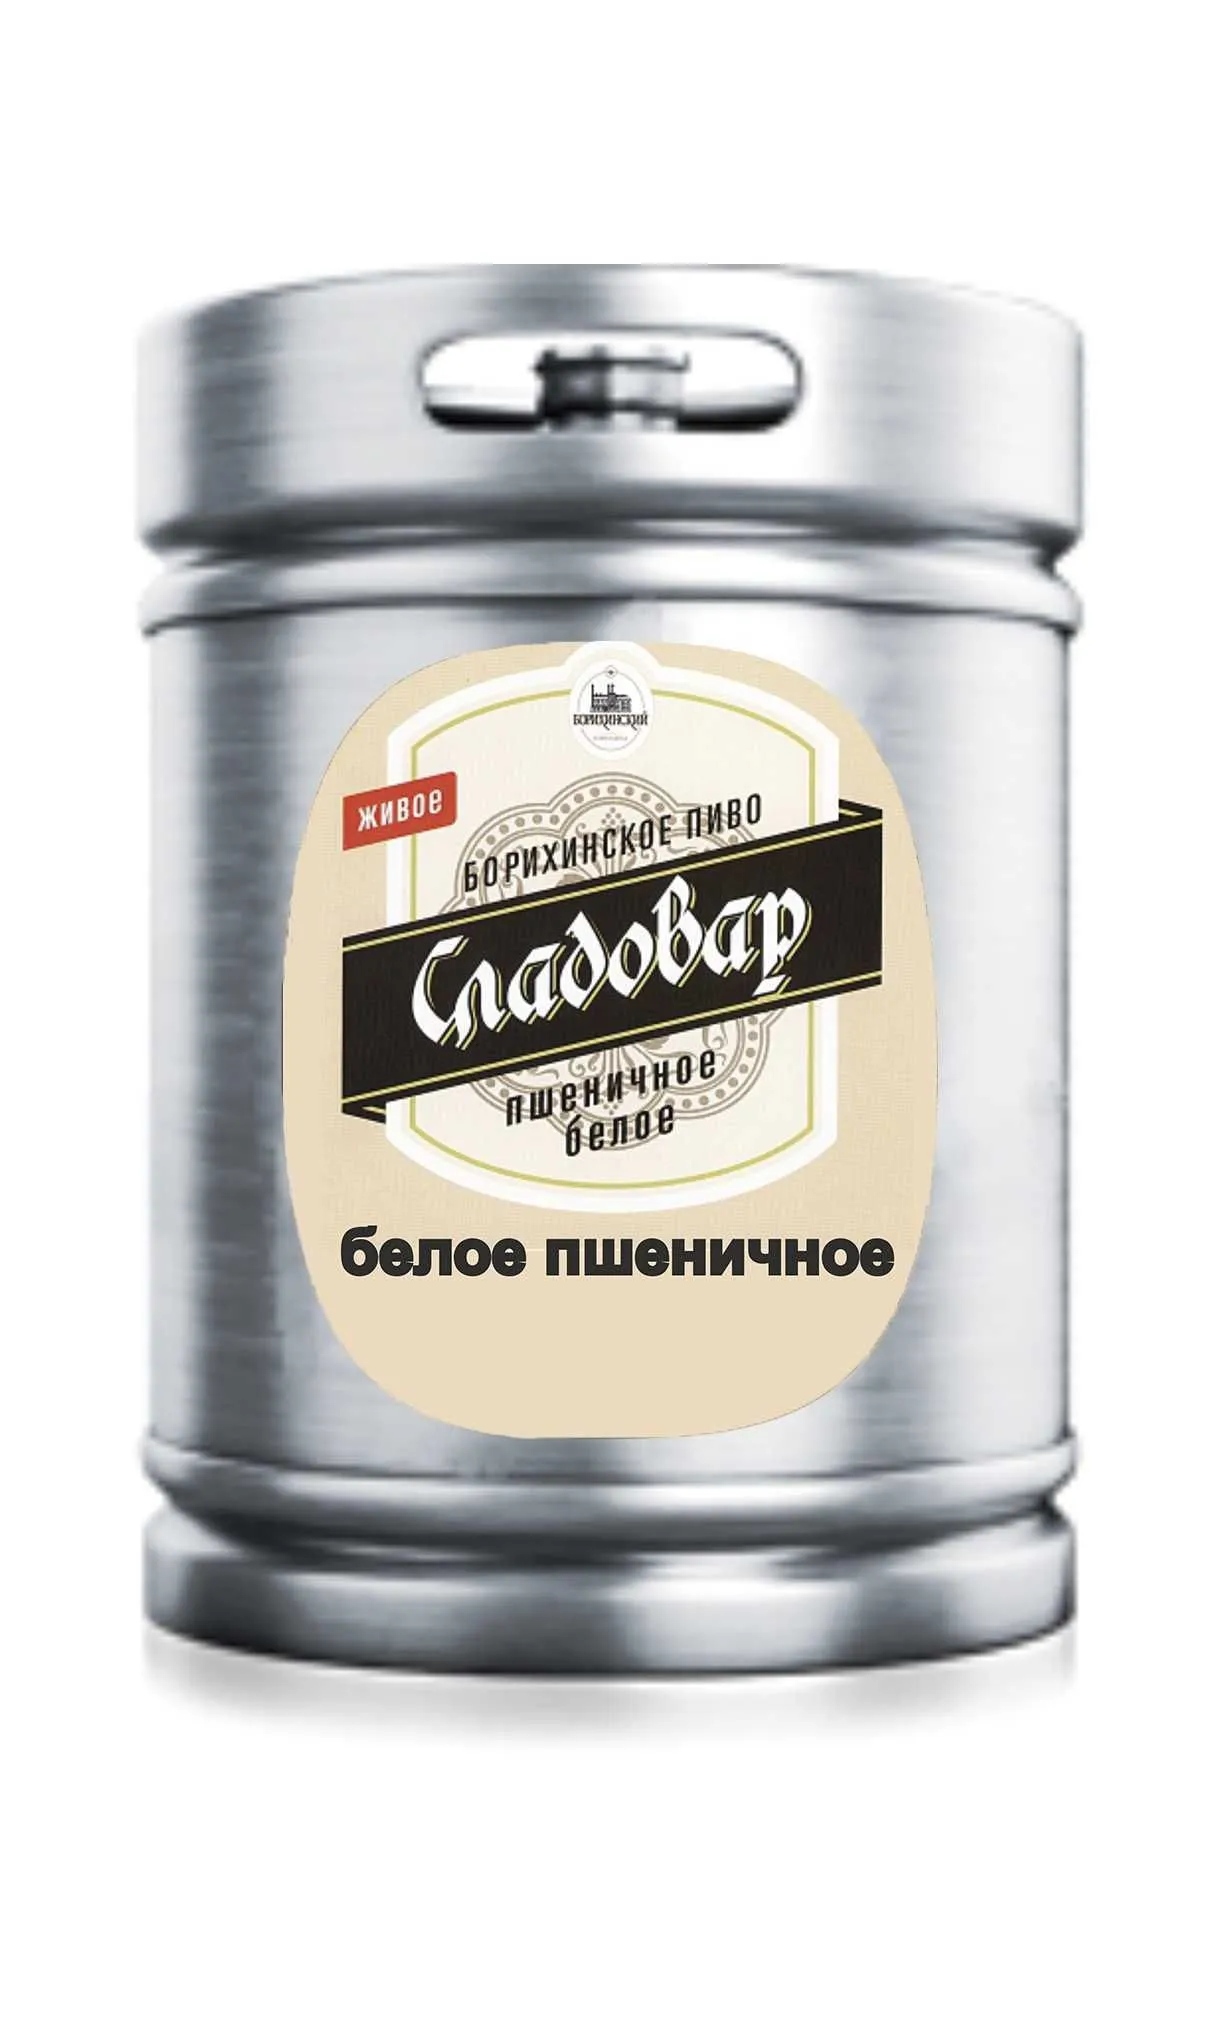 Пиво Сладовар белое н/ф 4,0%